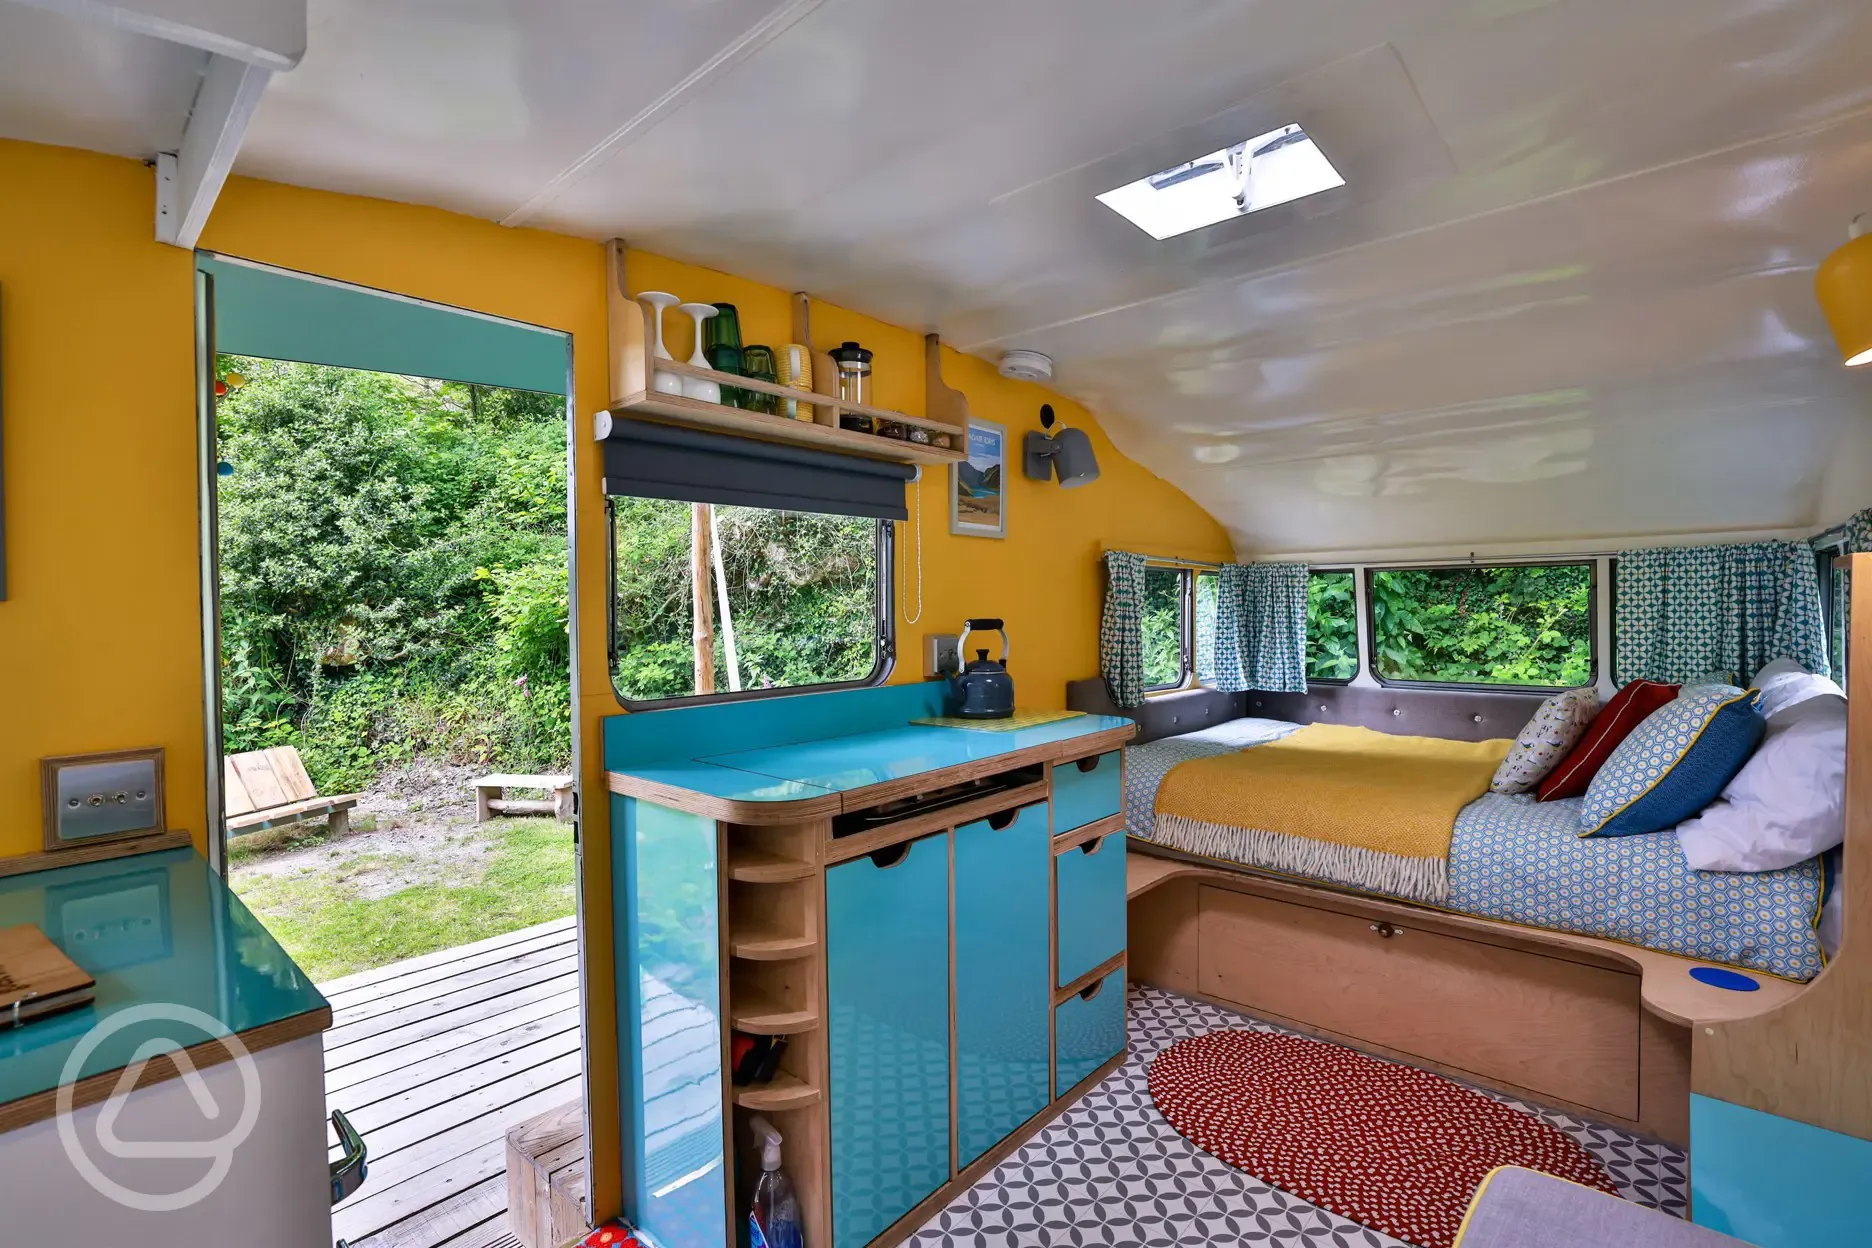 Vintage caravan interior